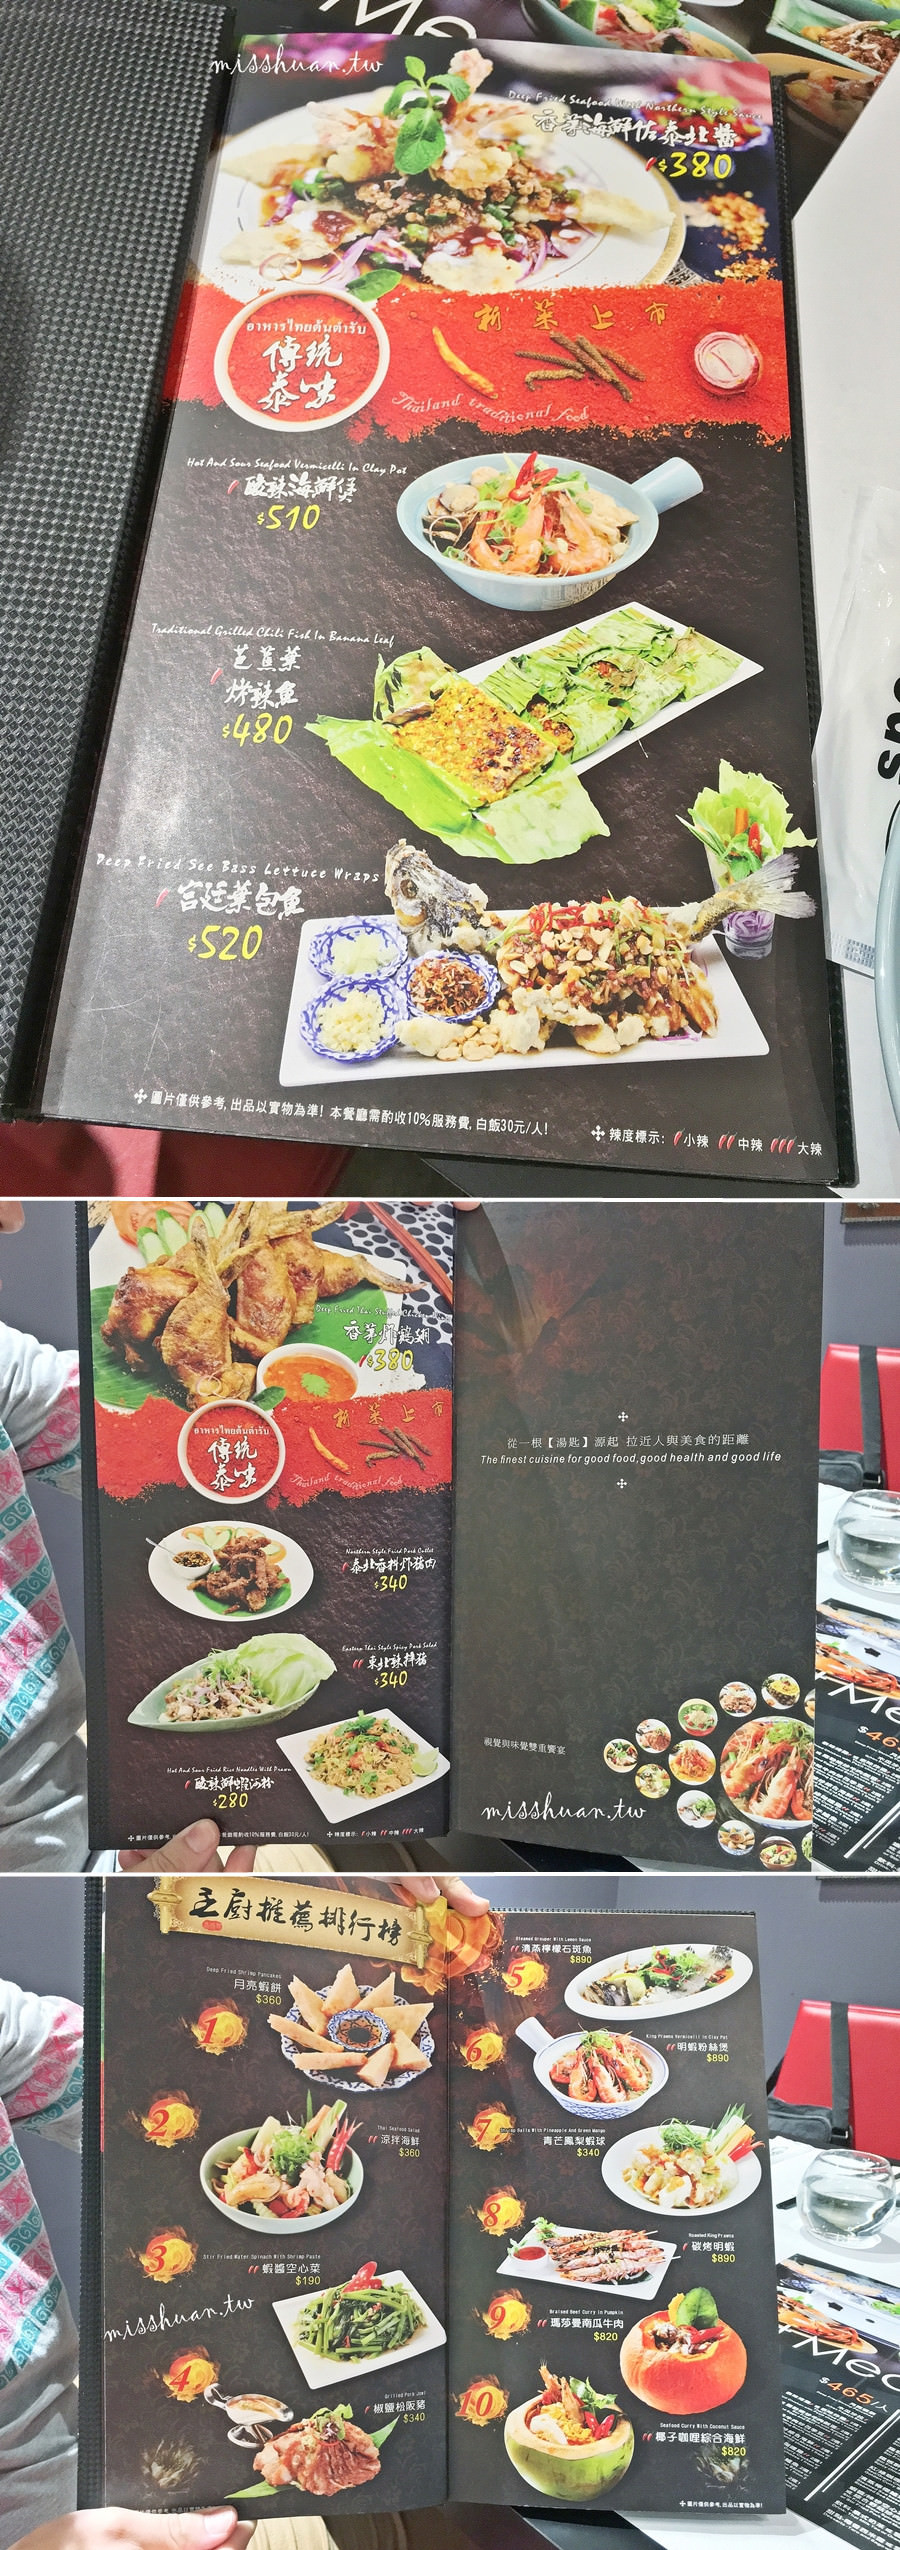 晶湯匙泰式主題餐廳 CRYSTALS POON 台北Sogo店